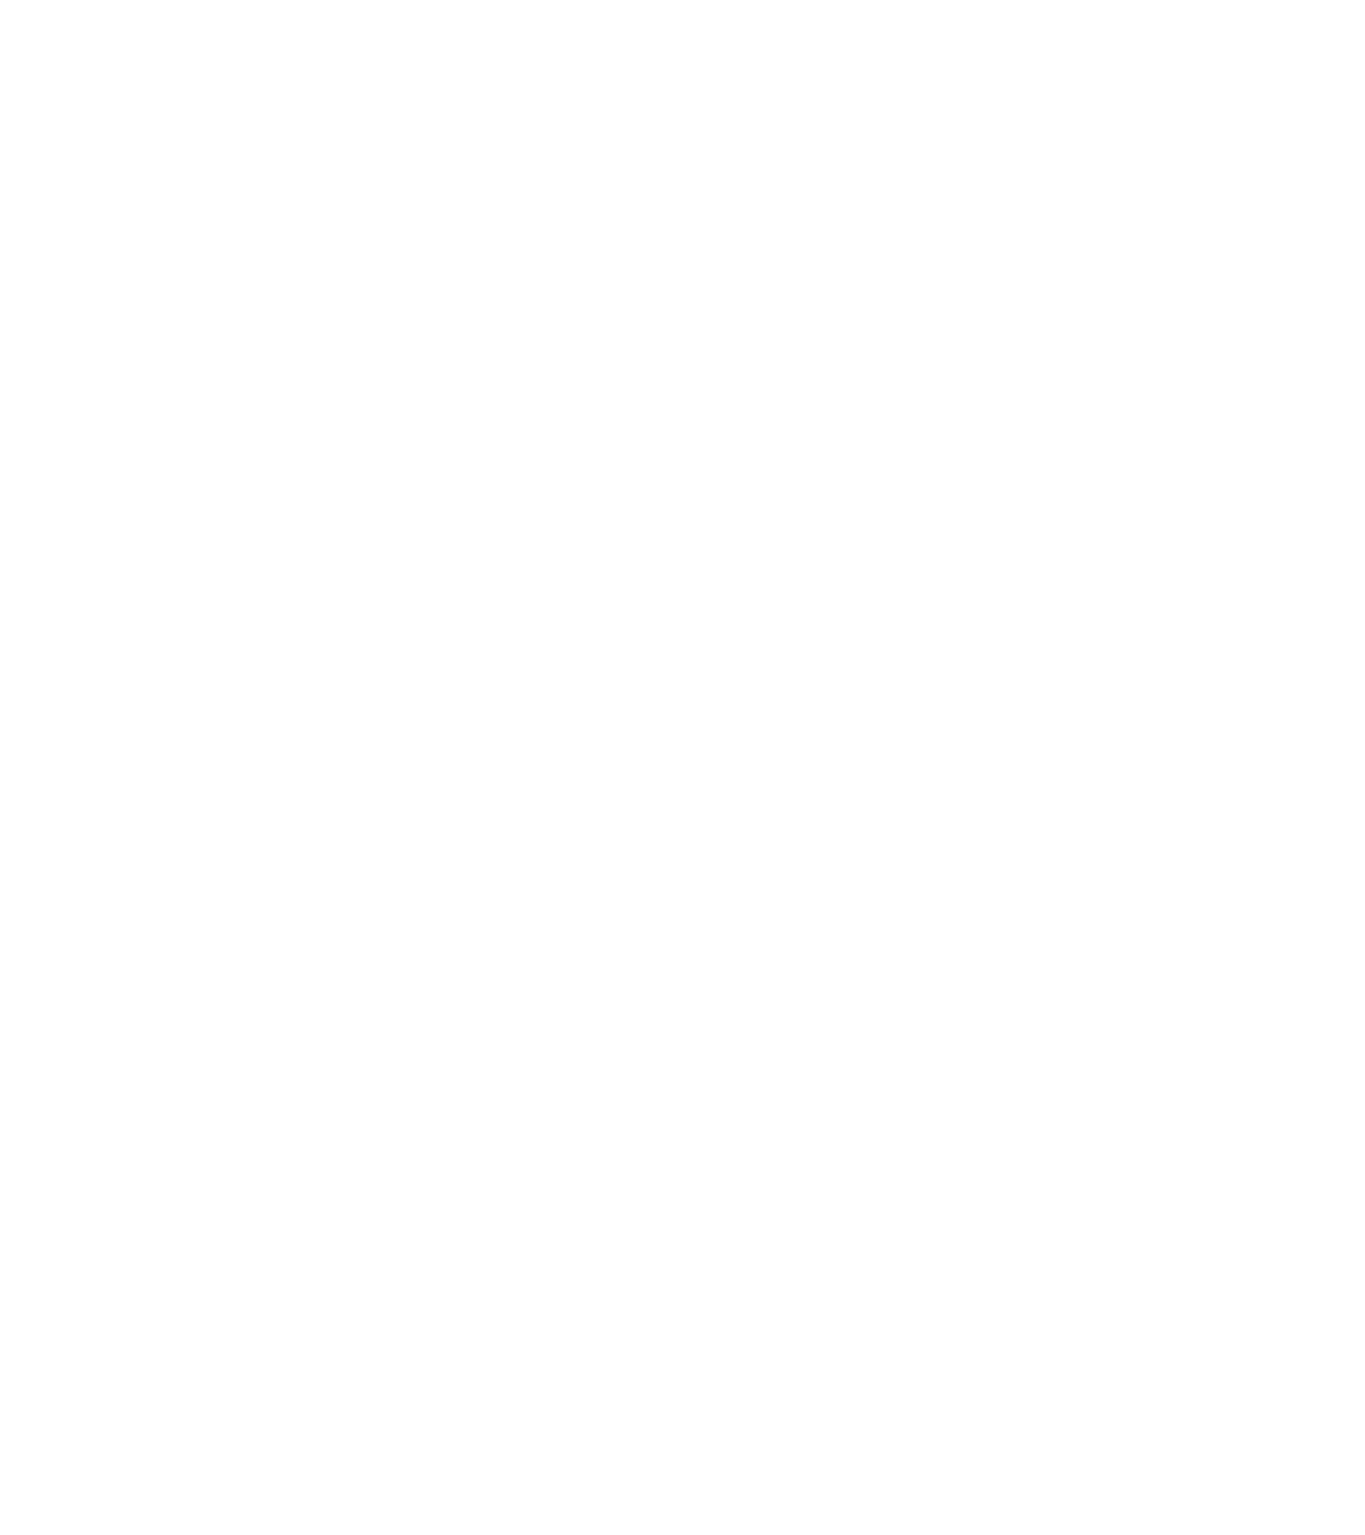 Kaspien logo for dark backgrounds (transparent PNG)